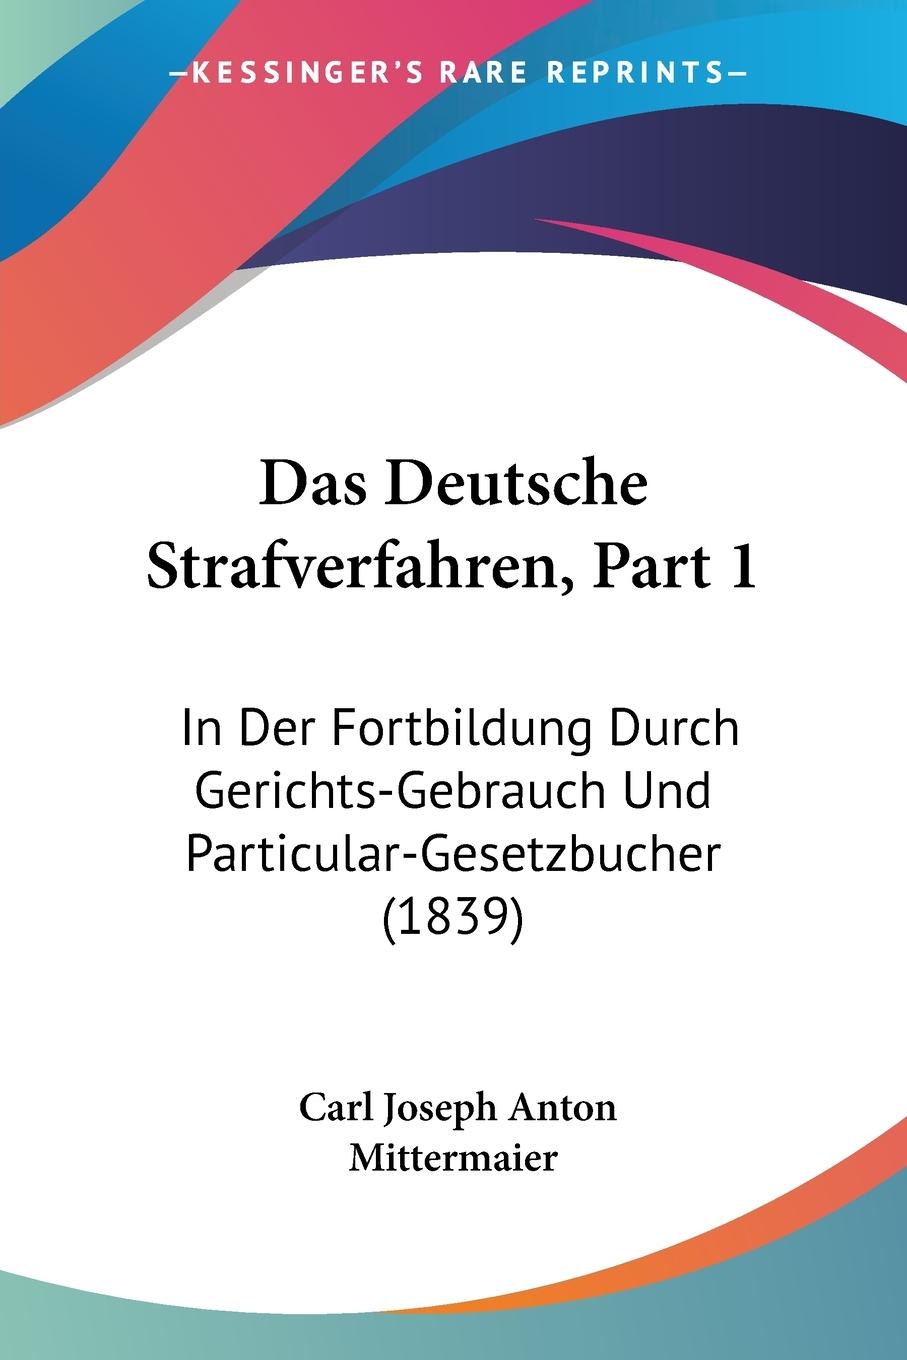 Das Deutsche Strafverfahren, Part 1 - Mittermaier, Carl Joseph Anton